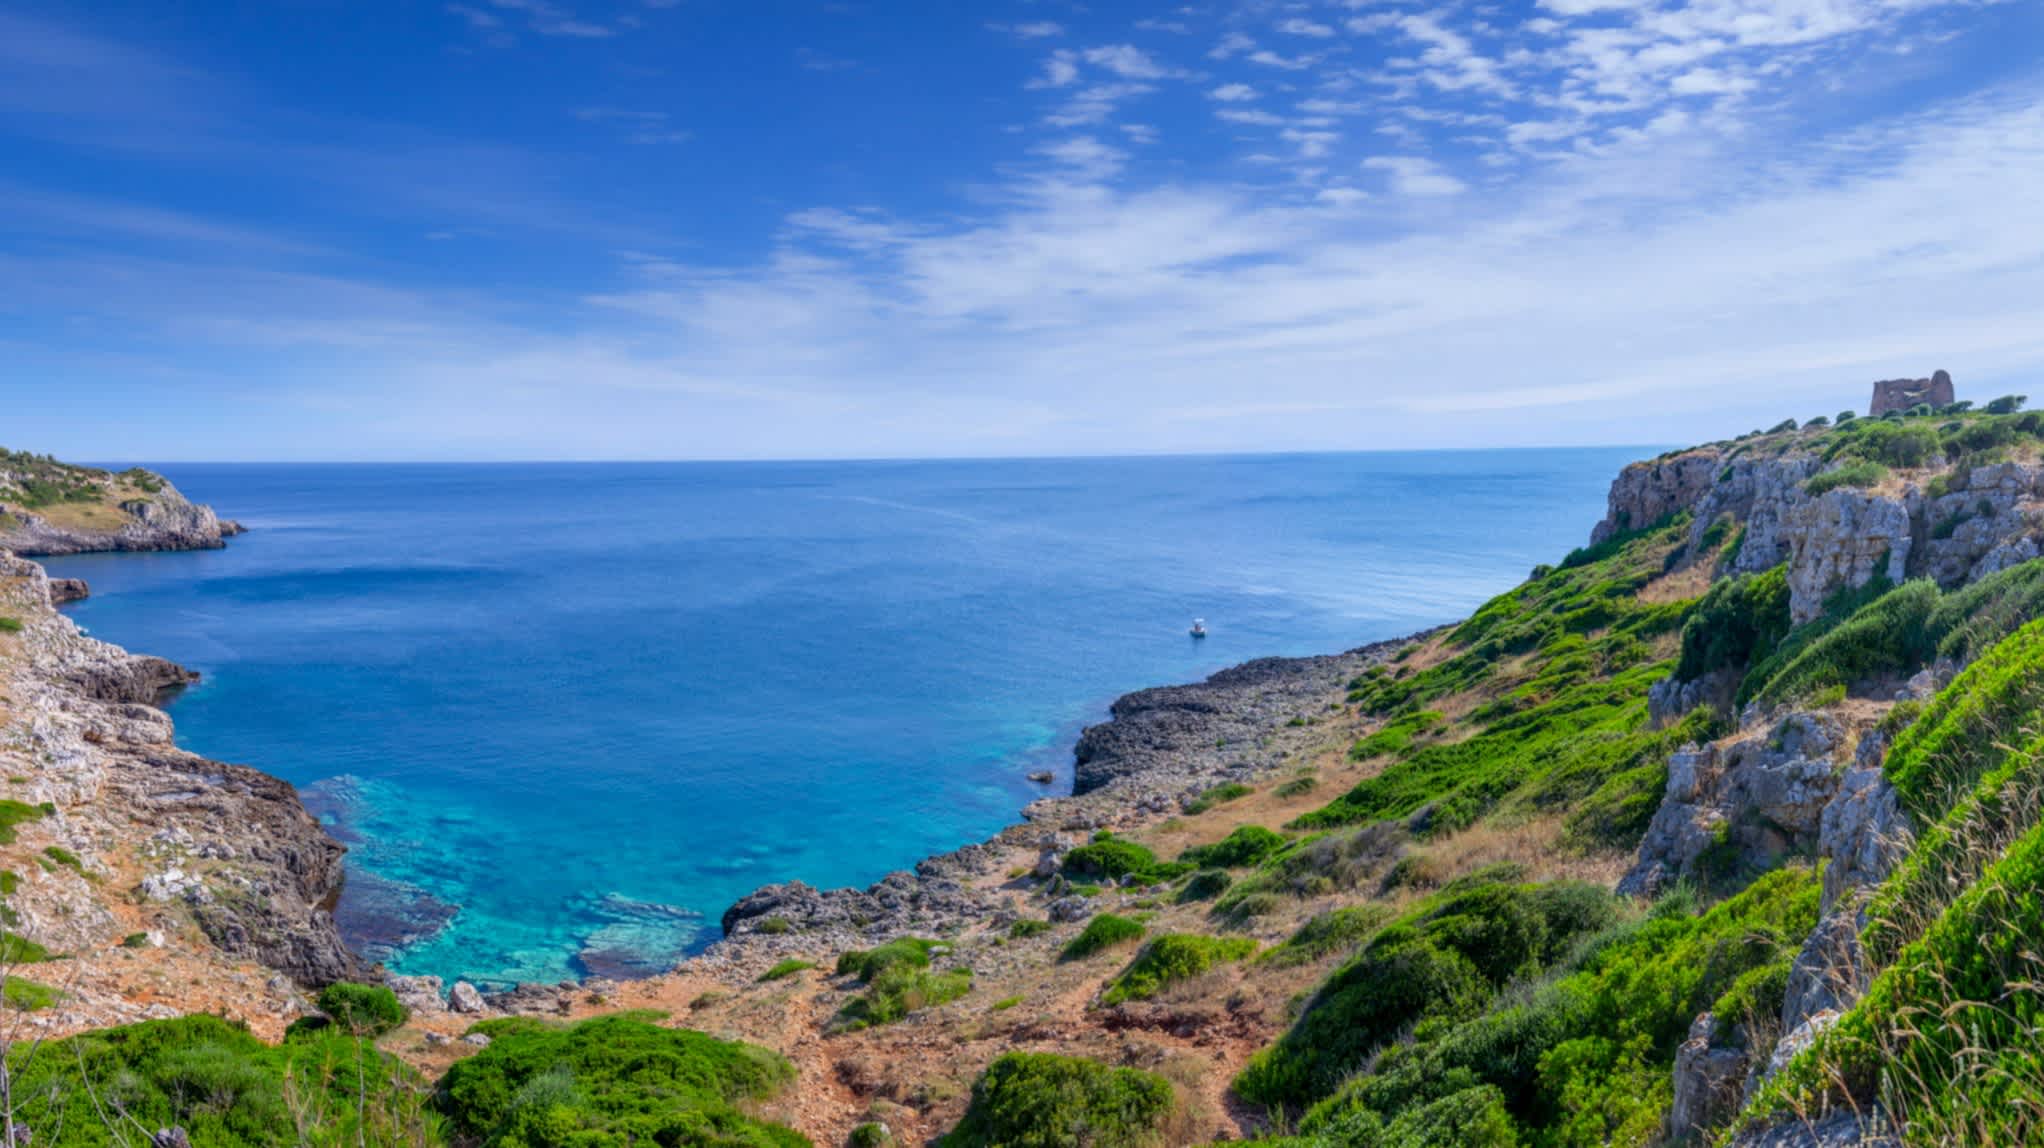 Vue panoramique sur la baie d'Uluzzo au parc régional Porto Selvaggio avec sur le fond la mer cristalline et des rochers.